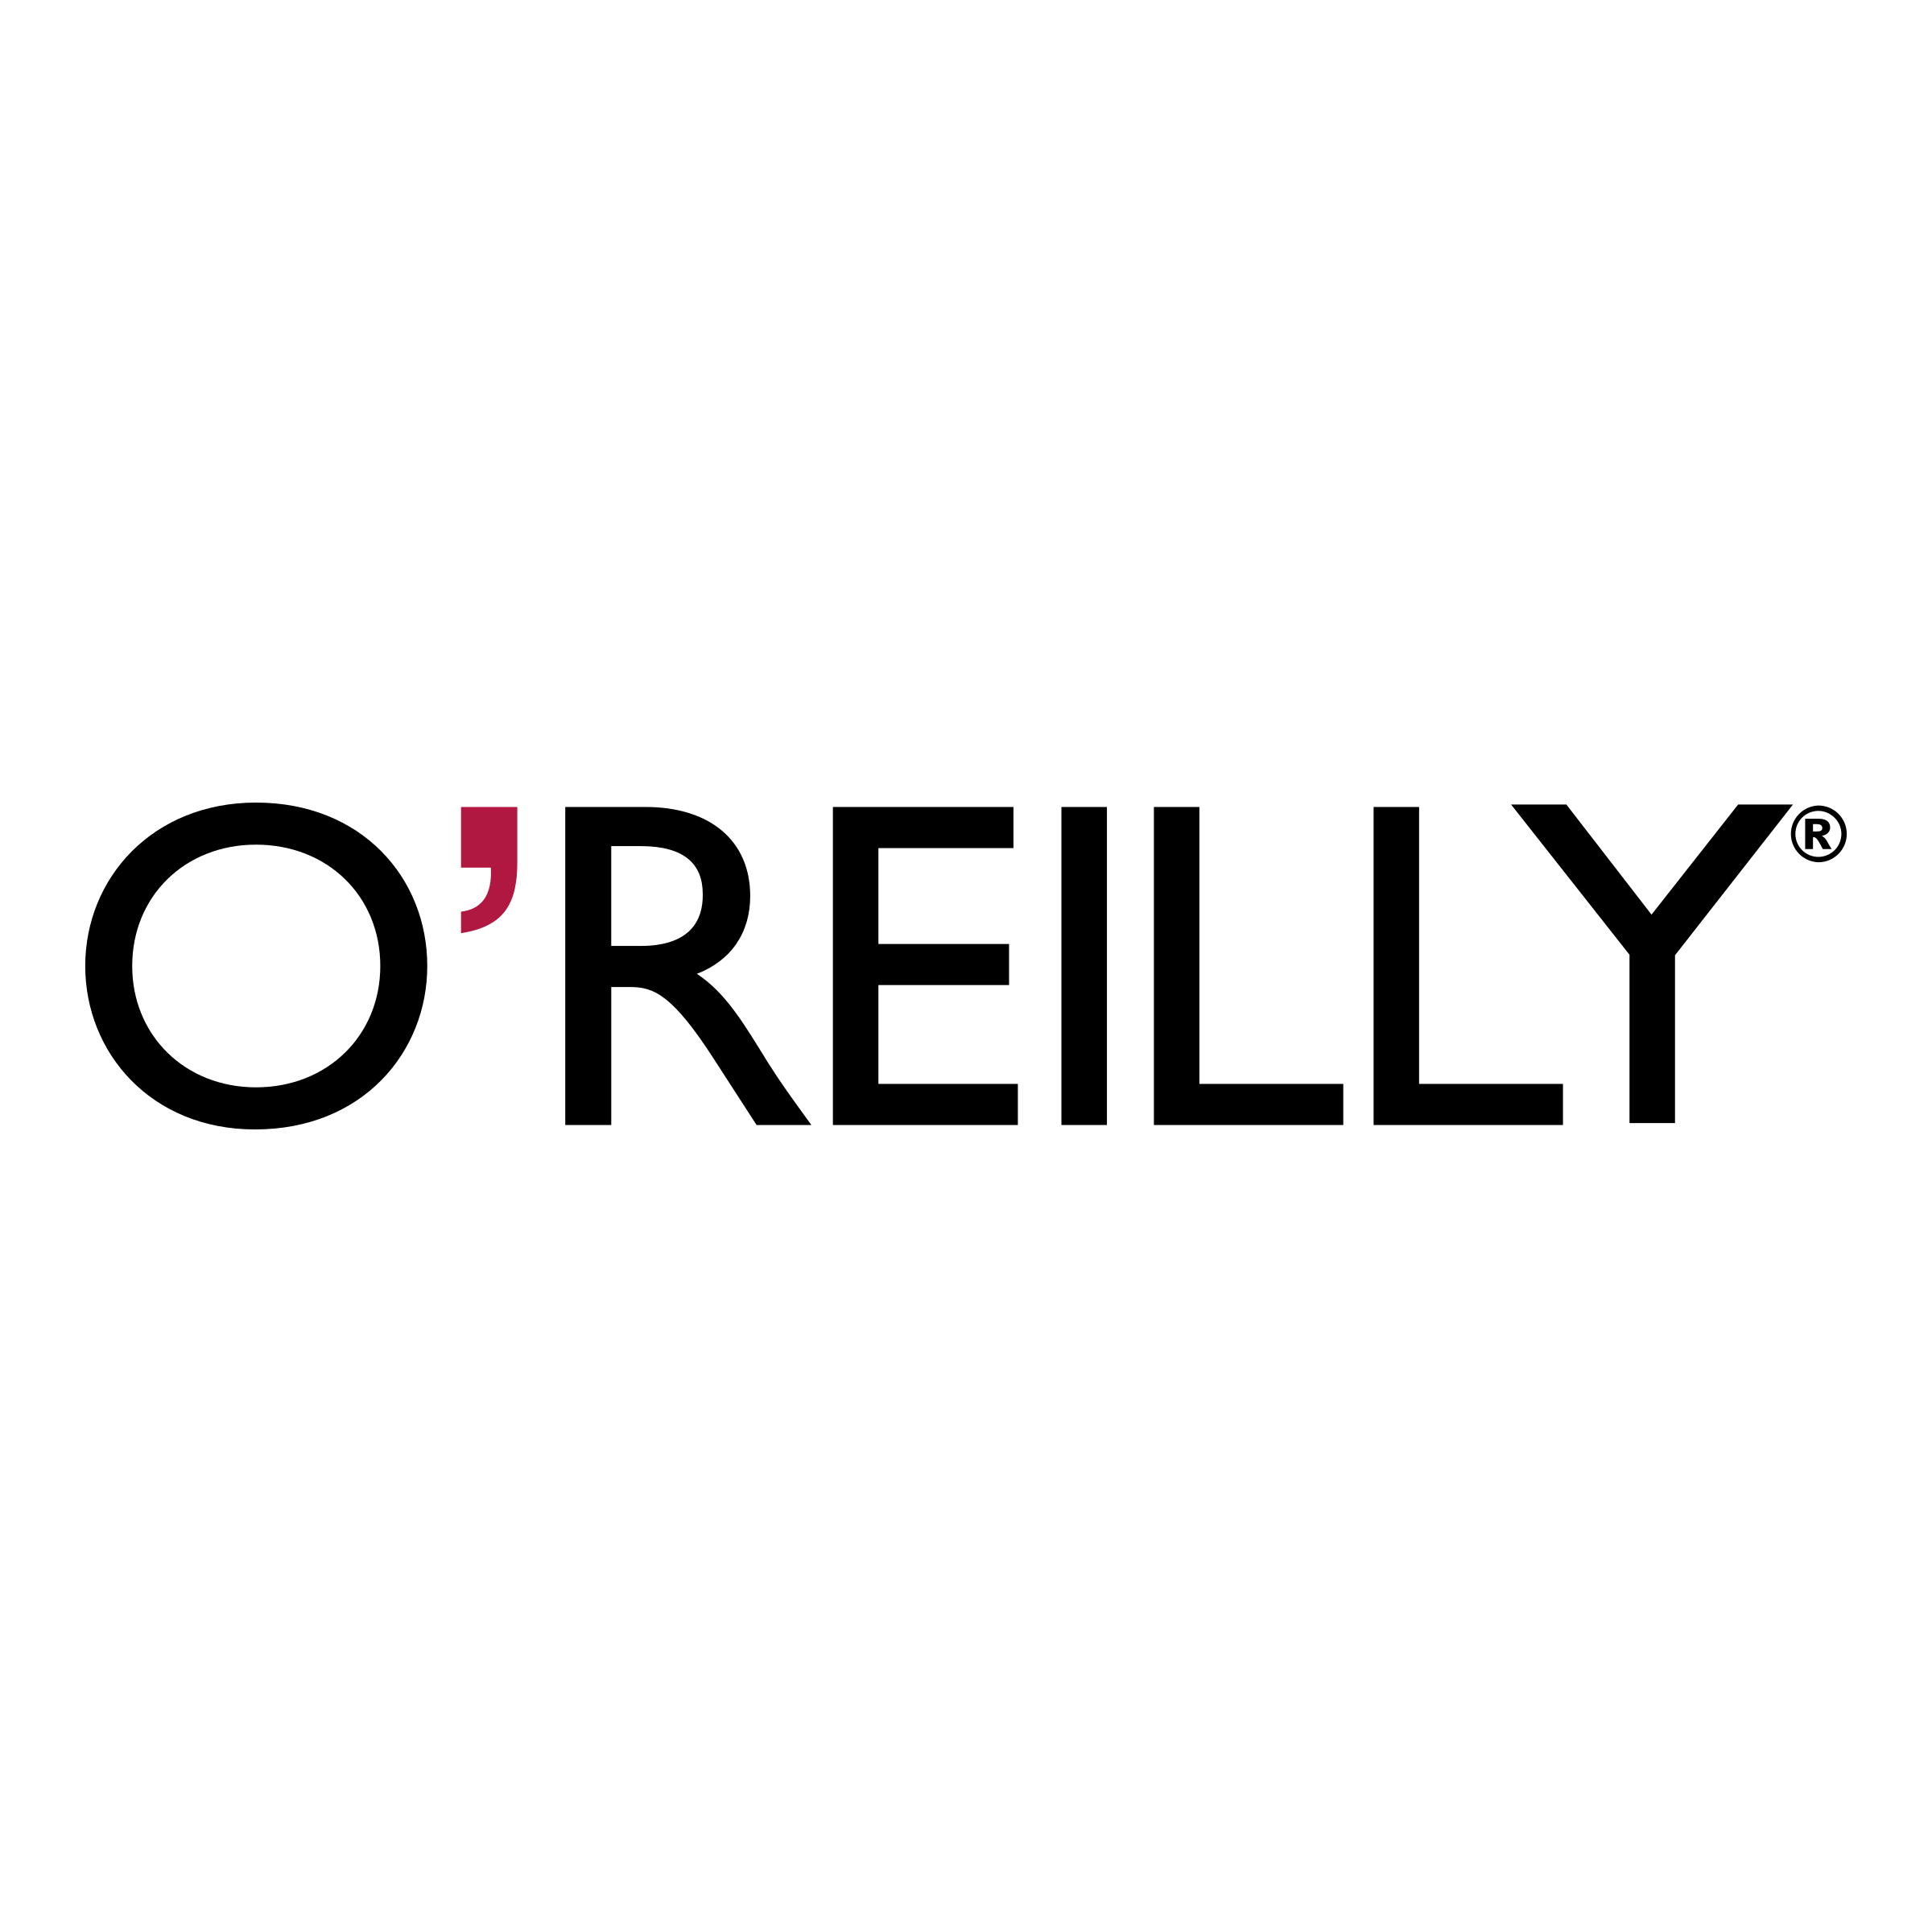 Reilly Logo - O'Reilly & Associates Logo PNG Transparent & SVG Vector - Freebie Supply